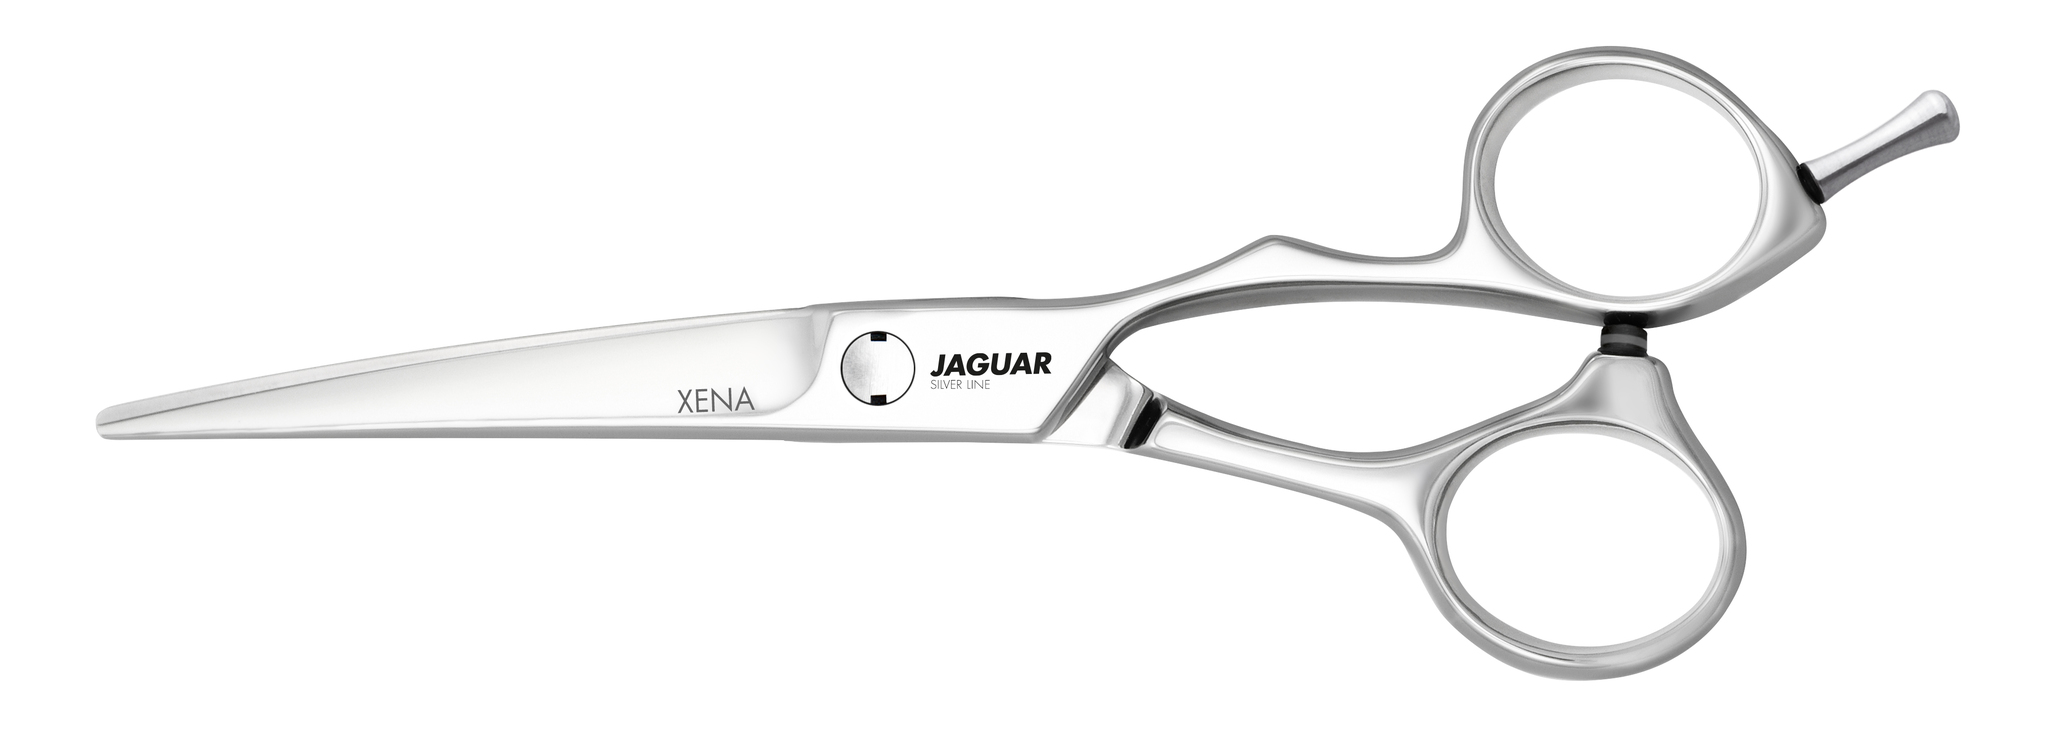 jaguar Silver Line Xena